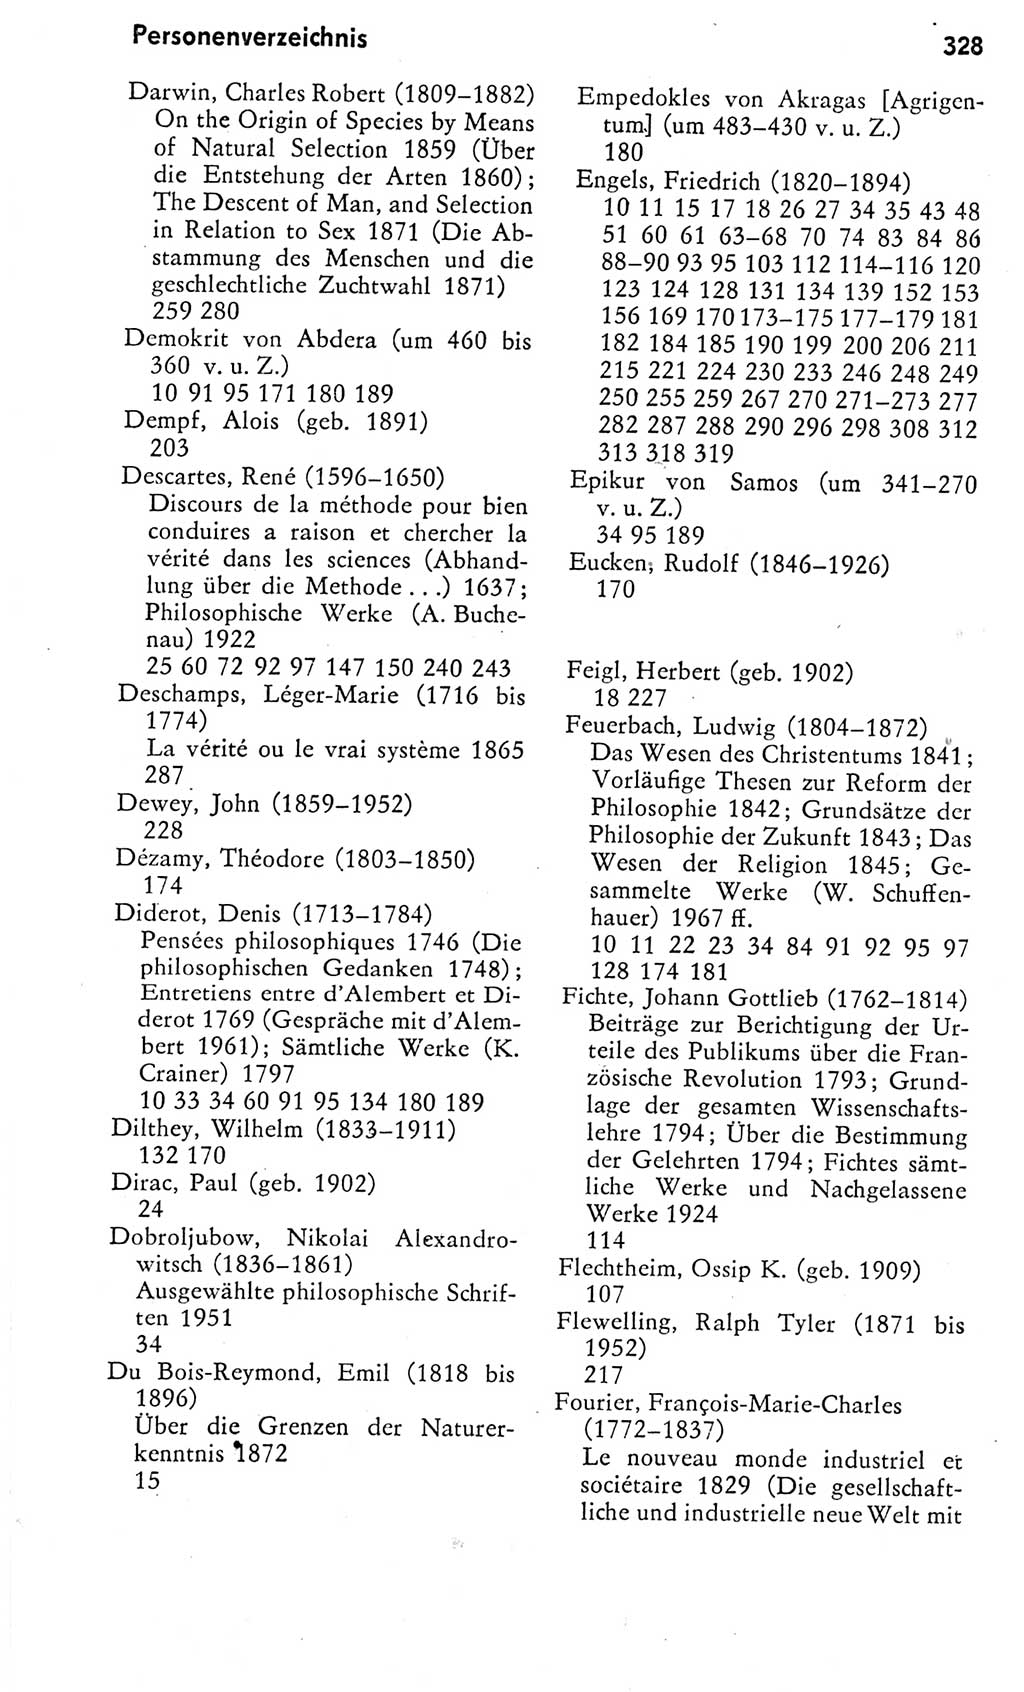 Kleines Wörterbuch der marxistisch-leninistischen Philosophie [Deutsche Demokratische Republik (DDR)] 1975, Seite 328 (Kl. Wb. ML Phil. DDR 1975, S. 328)